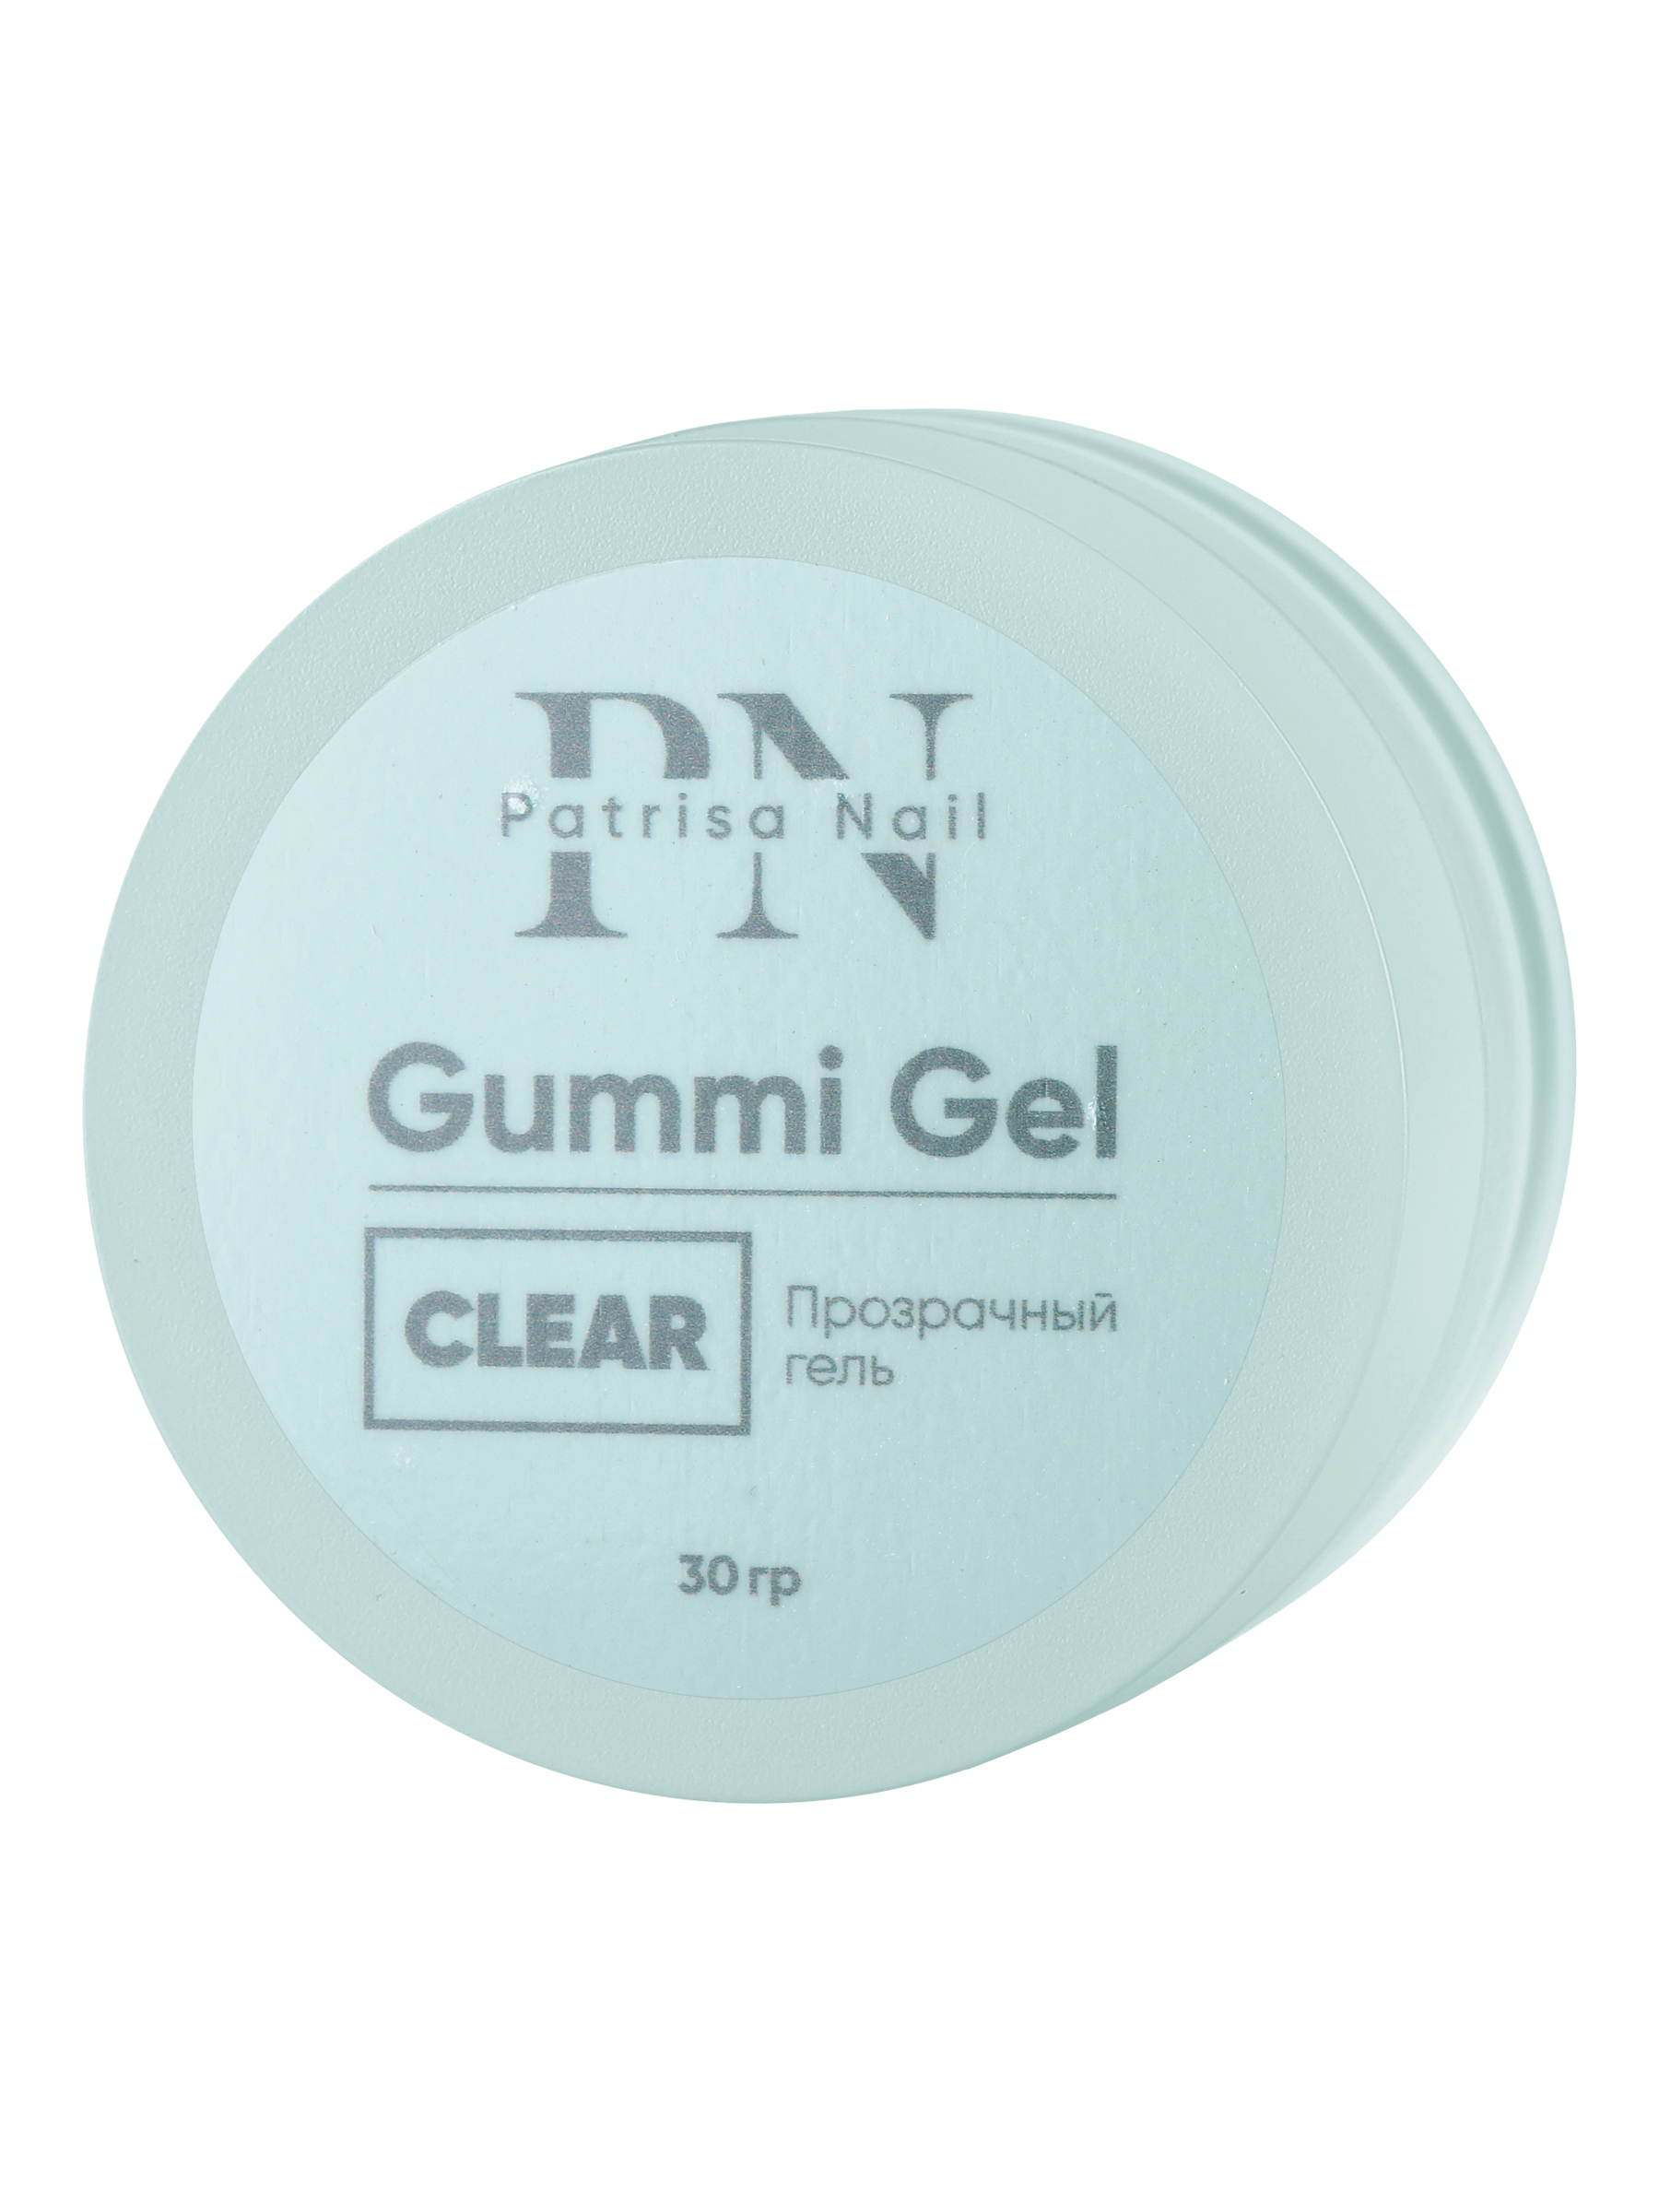 Прозрачный гель Patrisa nail Gummi Gel Clear высокой вязкости 30 г гель для дизайна луи филипп jelly gel clear 30 г